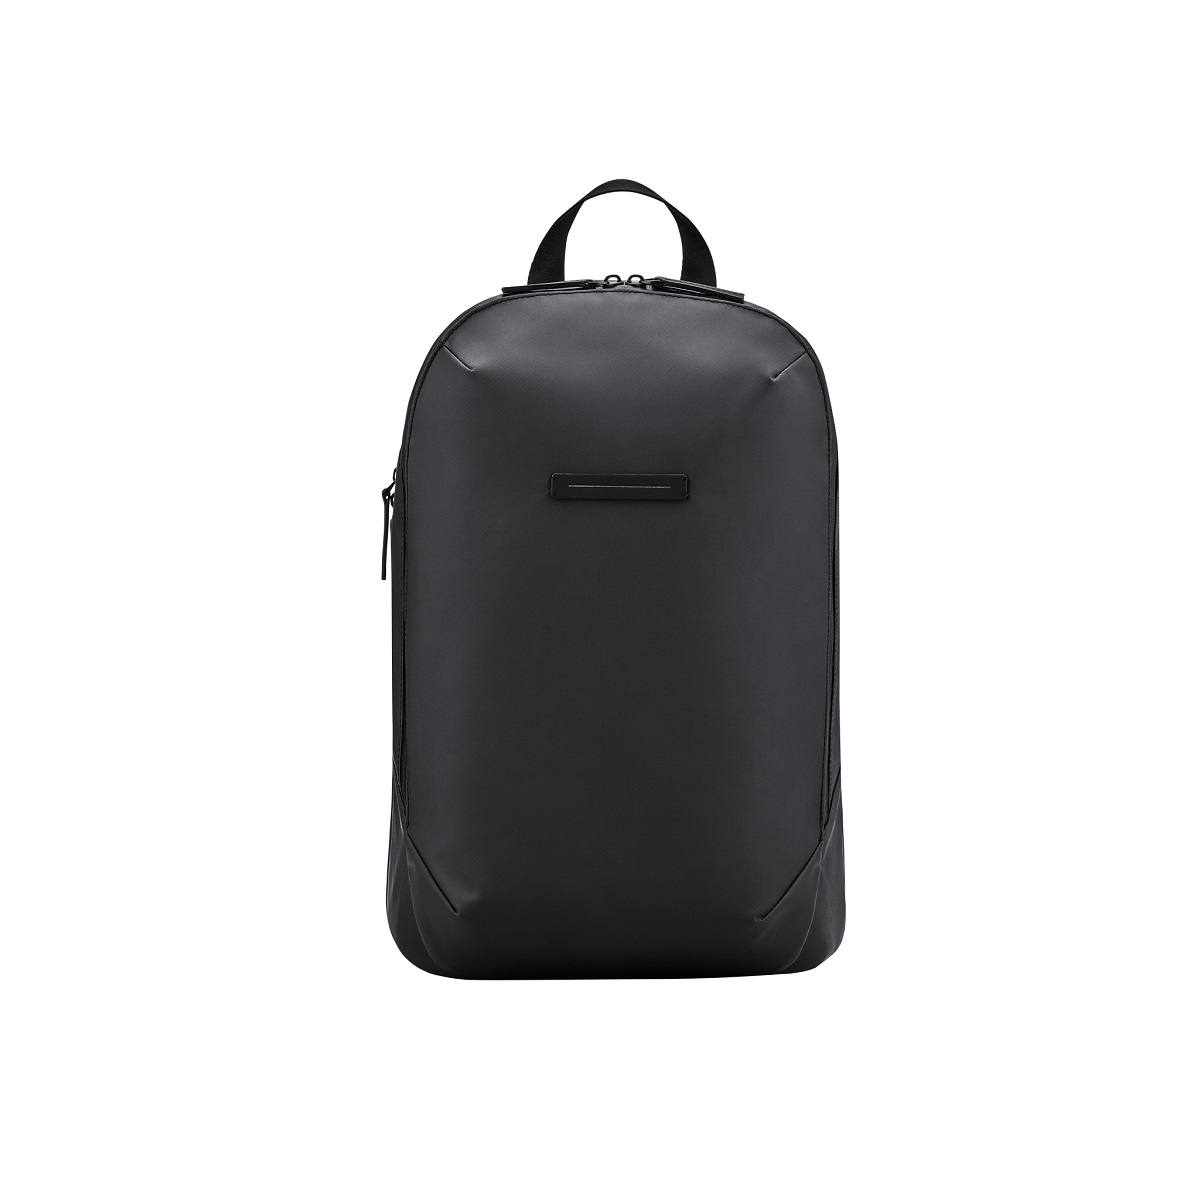 Image of Gion Backpack in schwarz Grösse S